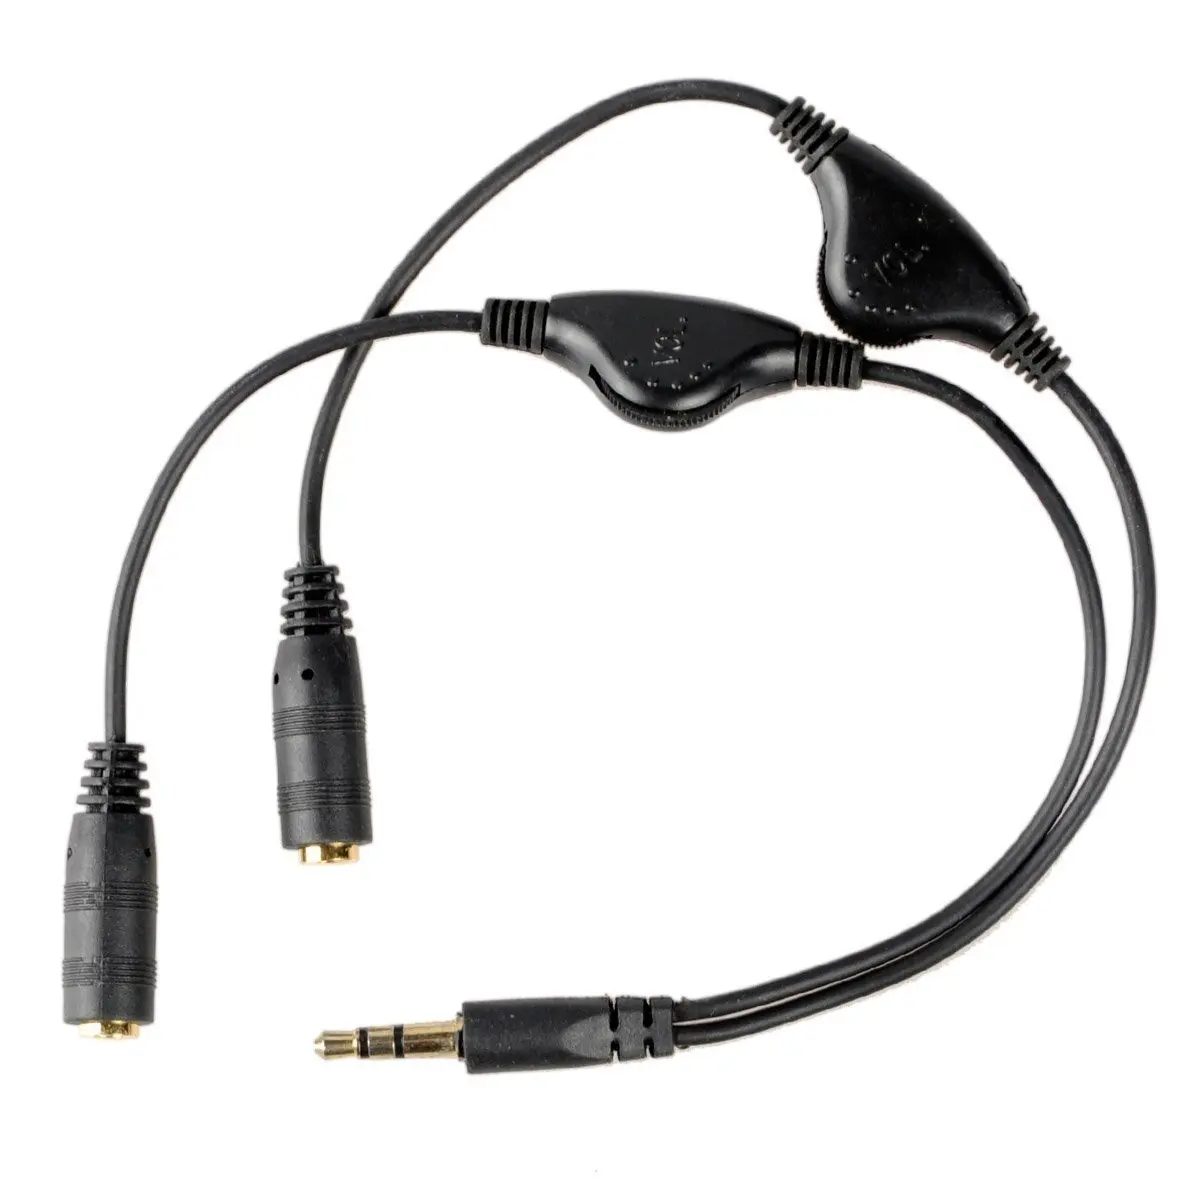 headset audio splitter for pc